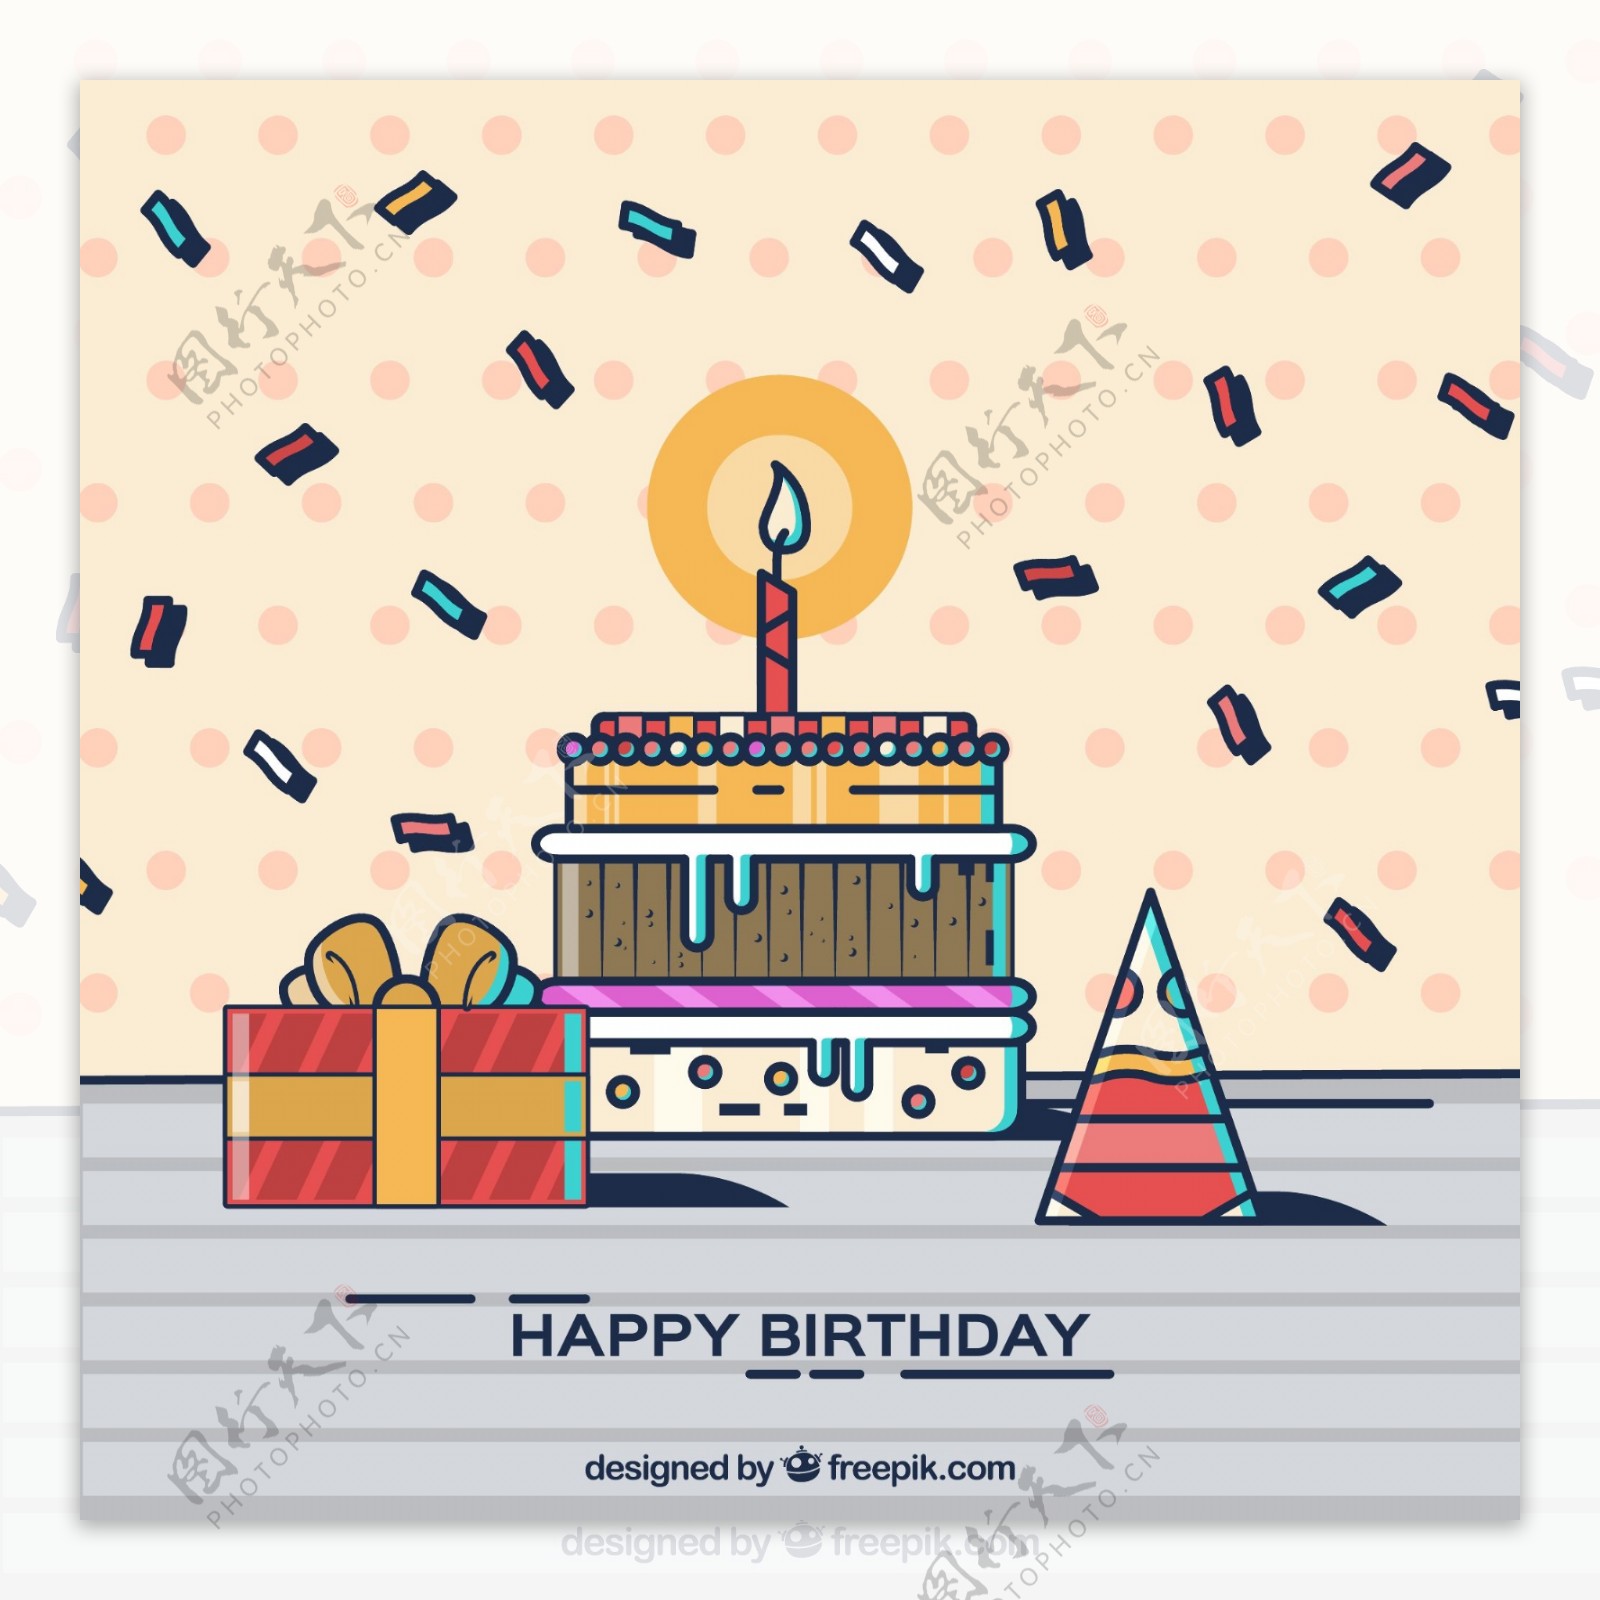 彩绘生日蛋糕和生日礼帽矢量图